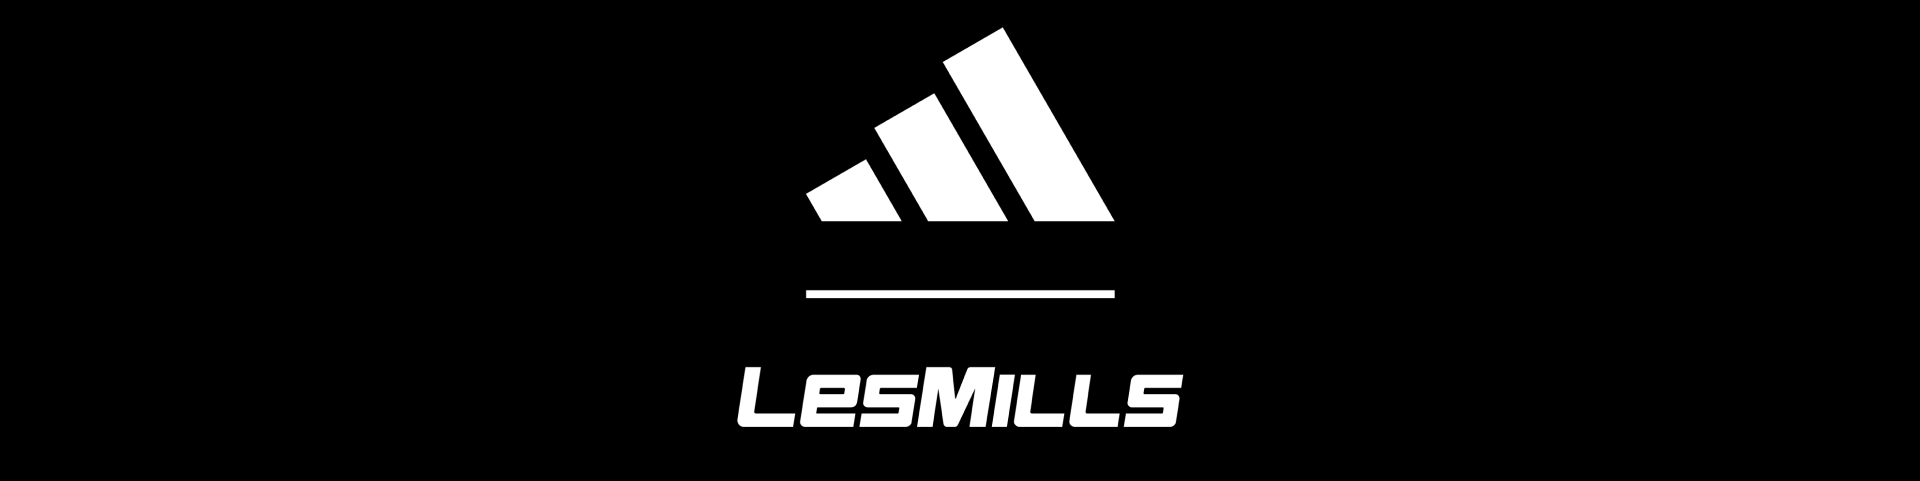 Todo tipo de Ligadura Debilidad adidas y Les Mills anuncian una nueva colaboración de marca para definir el  futuro del training